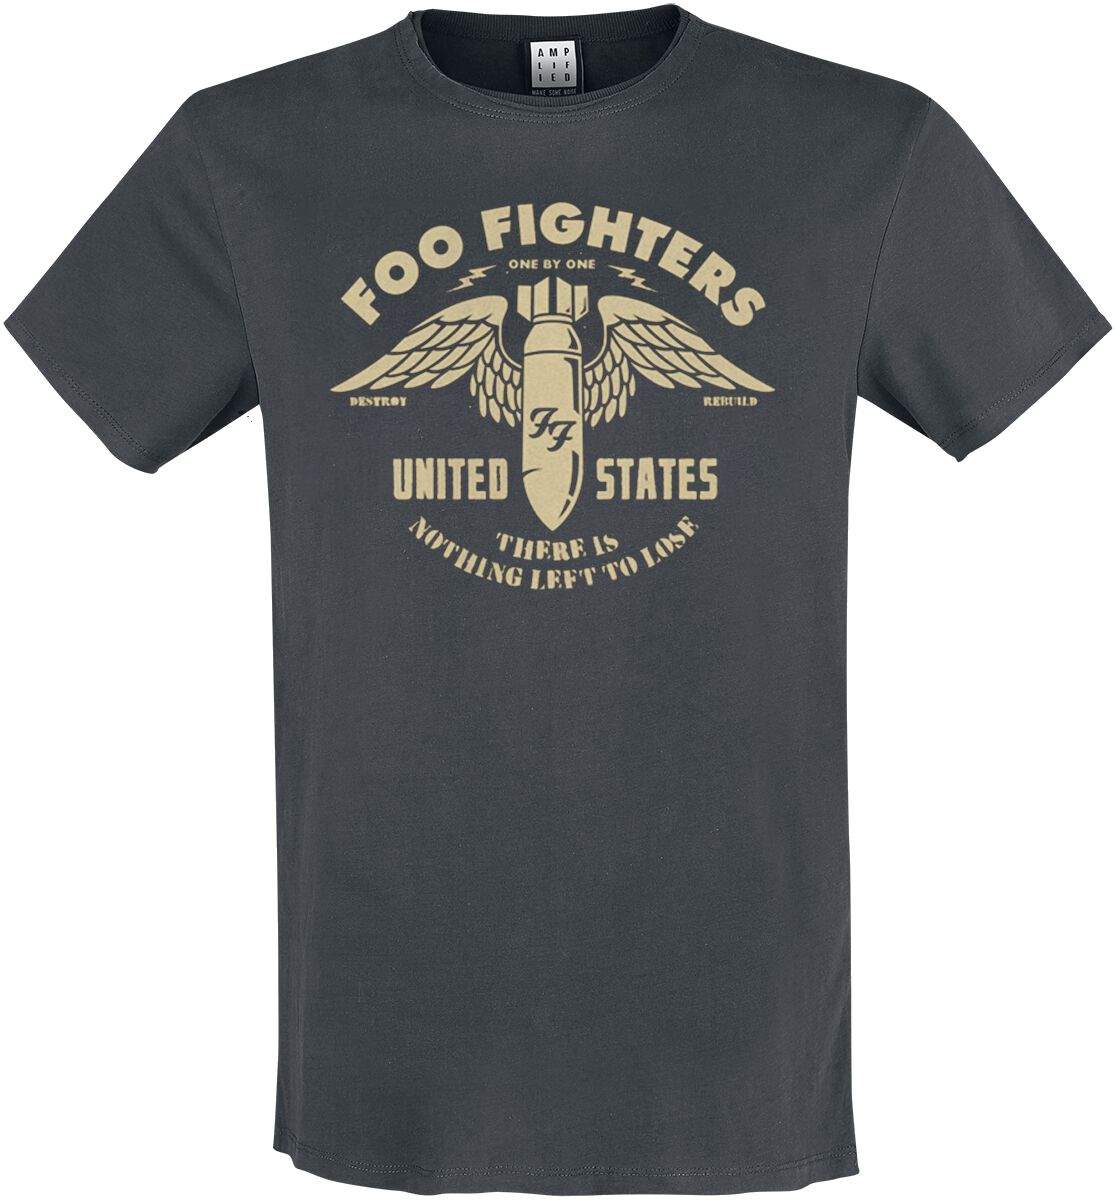 Foo Fighters T-Shirt - Amplified Collection - One By One - S bis 3XL - für Männer - Größe 3XL - charcoal  - Lizenziertes Merchandise!